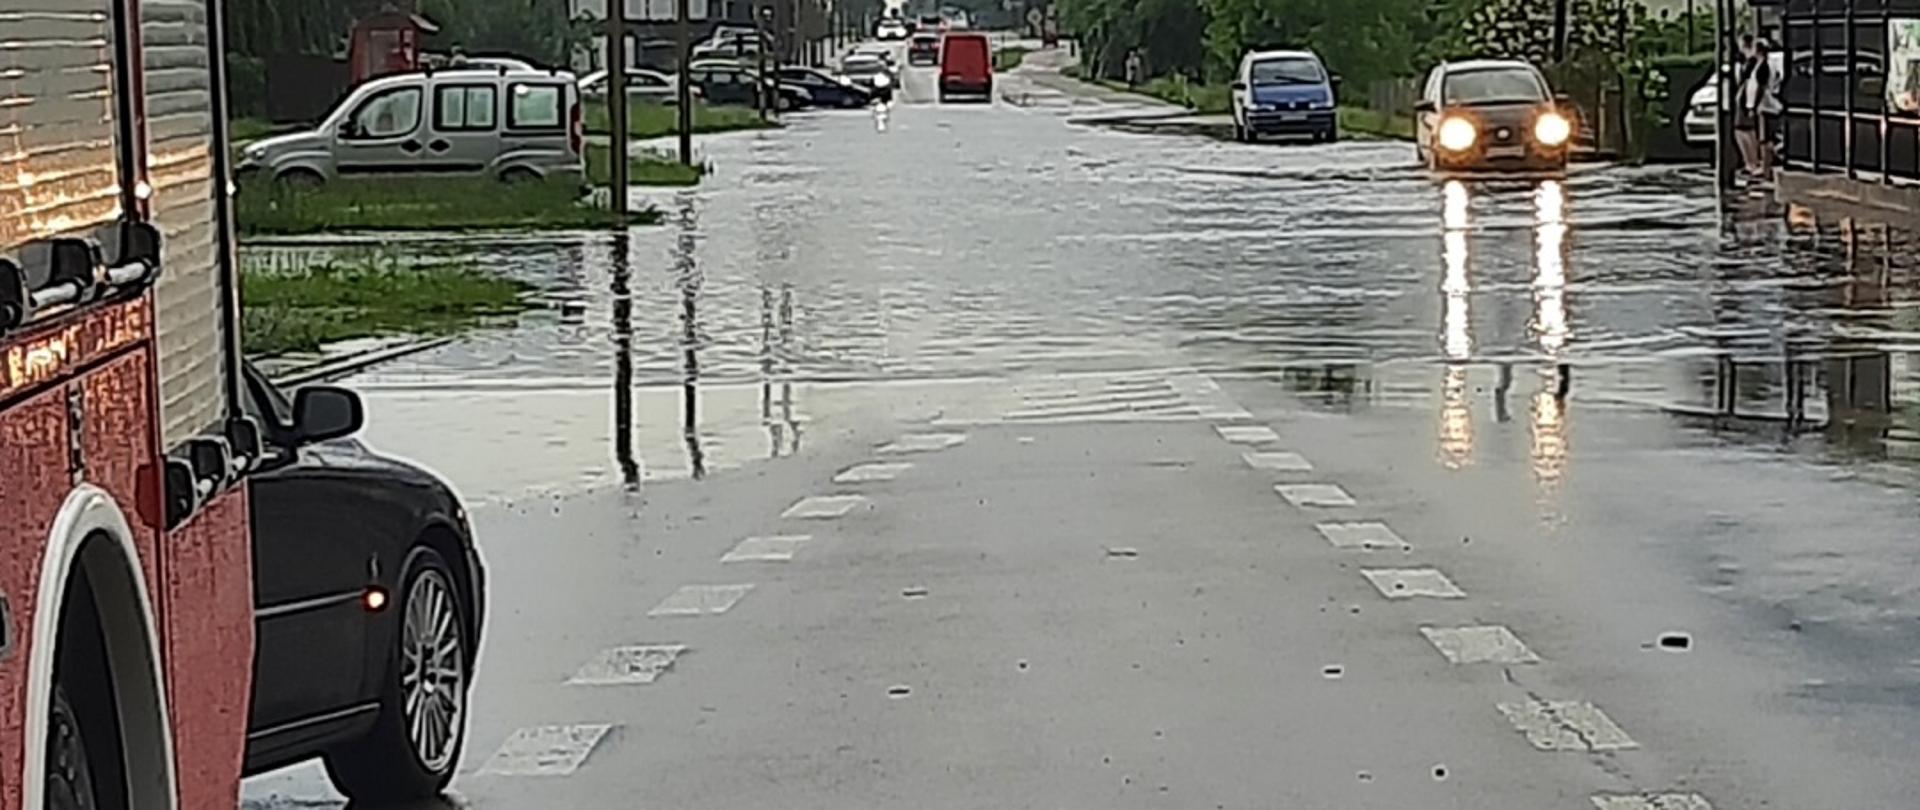 Zdjęcie obrazuje zalaną ulicę i przejeżdżające samochody